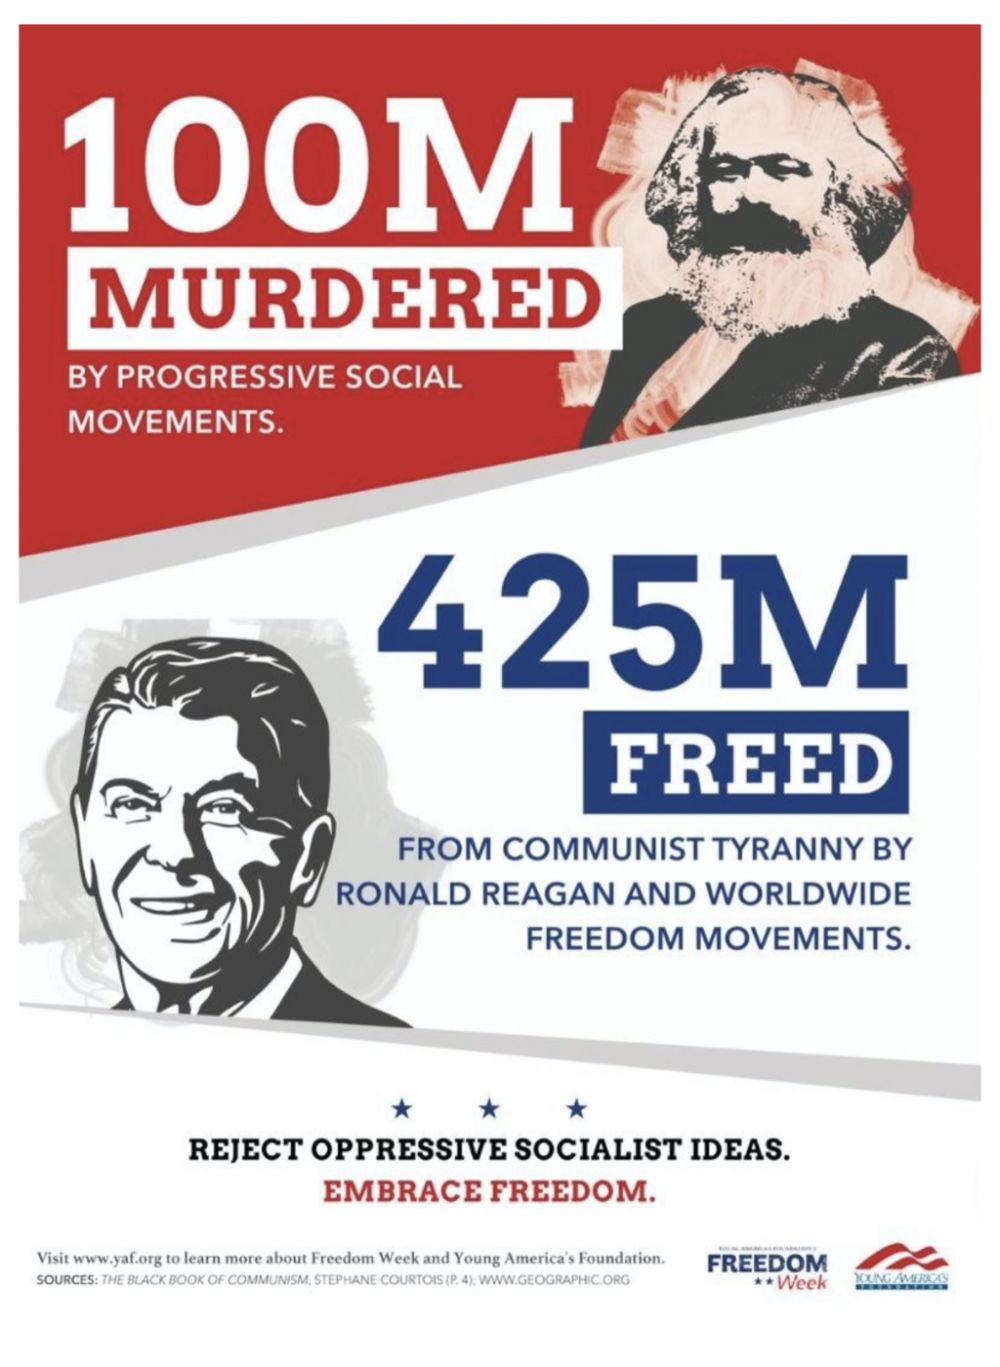 Socialism or Freedom?